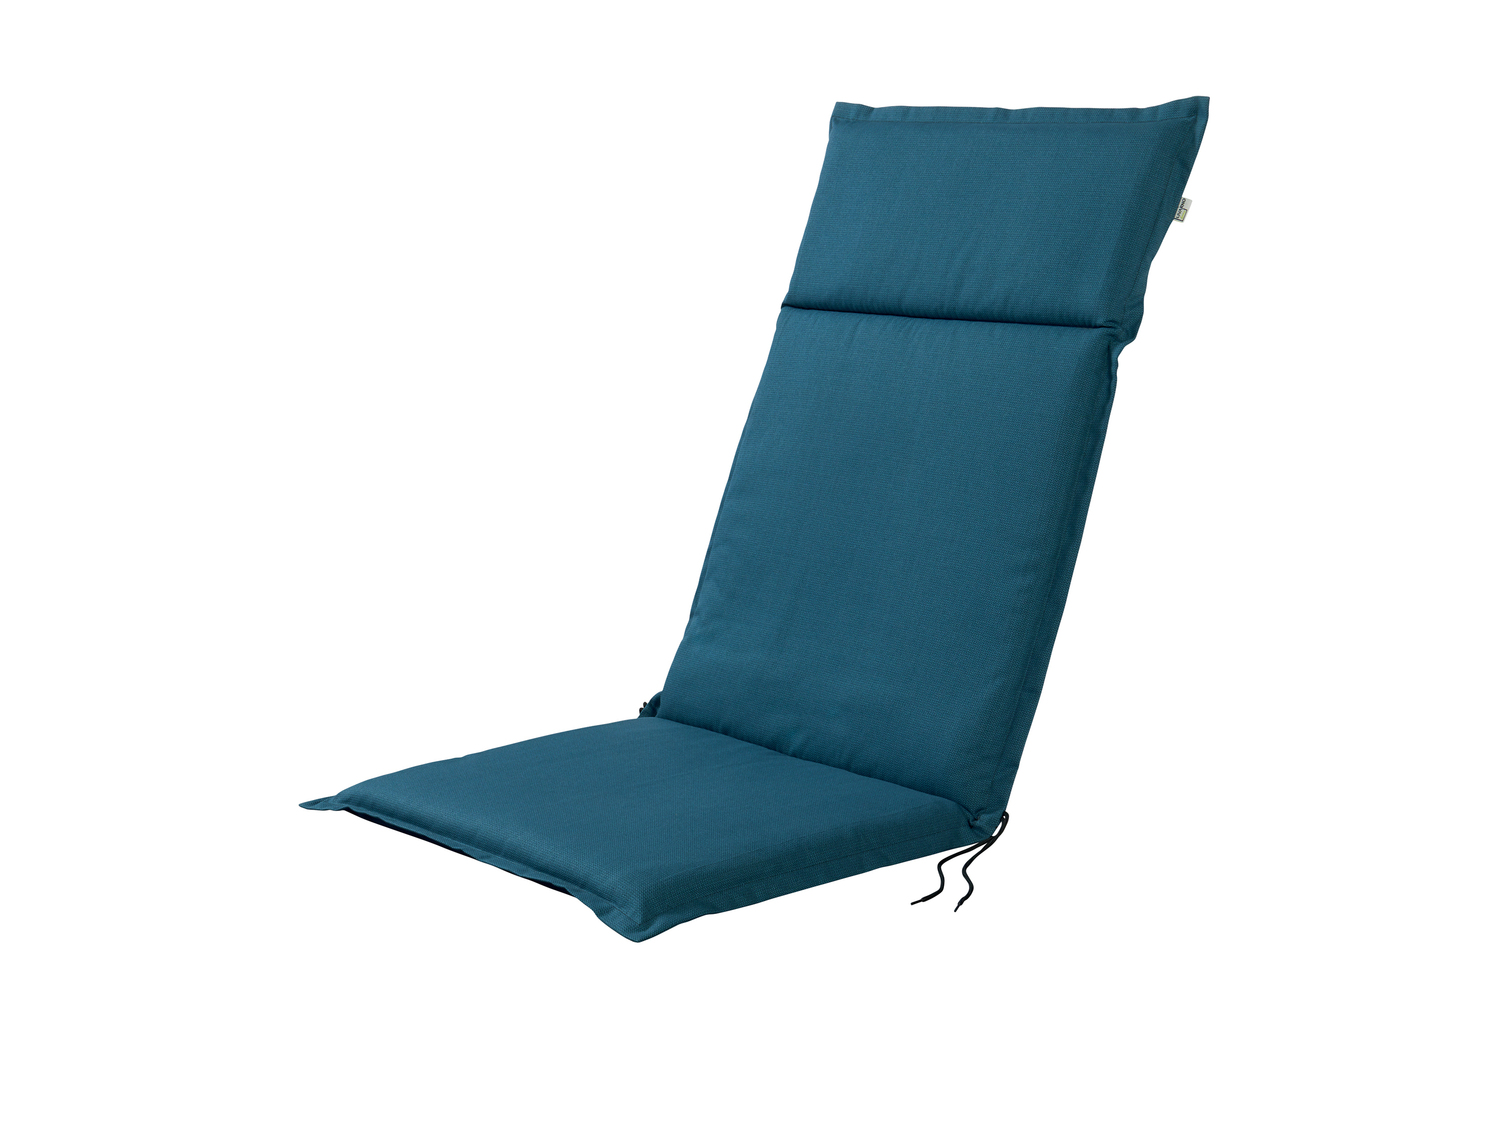 Cuscino per sedia sdraio Livarno, prezzo 14.99 &#8364; 
120x50 cm
Caratteristiche

- ...